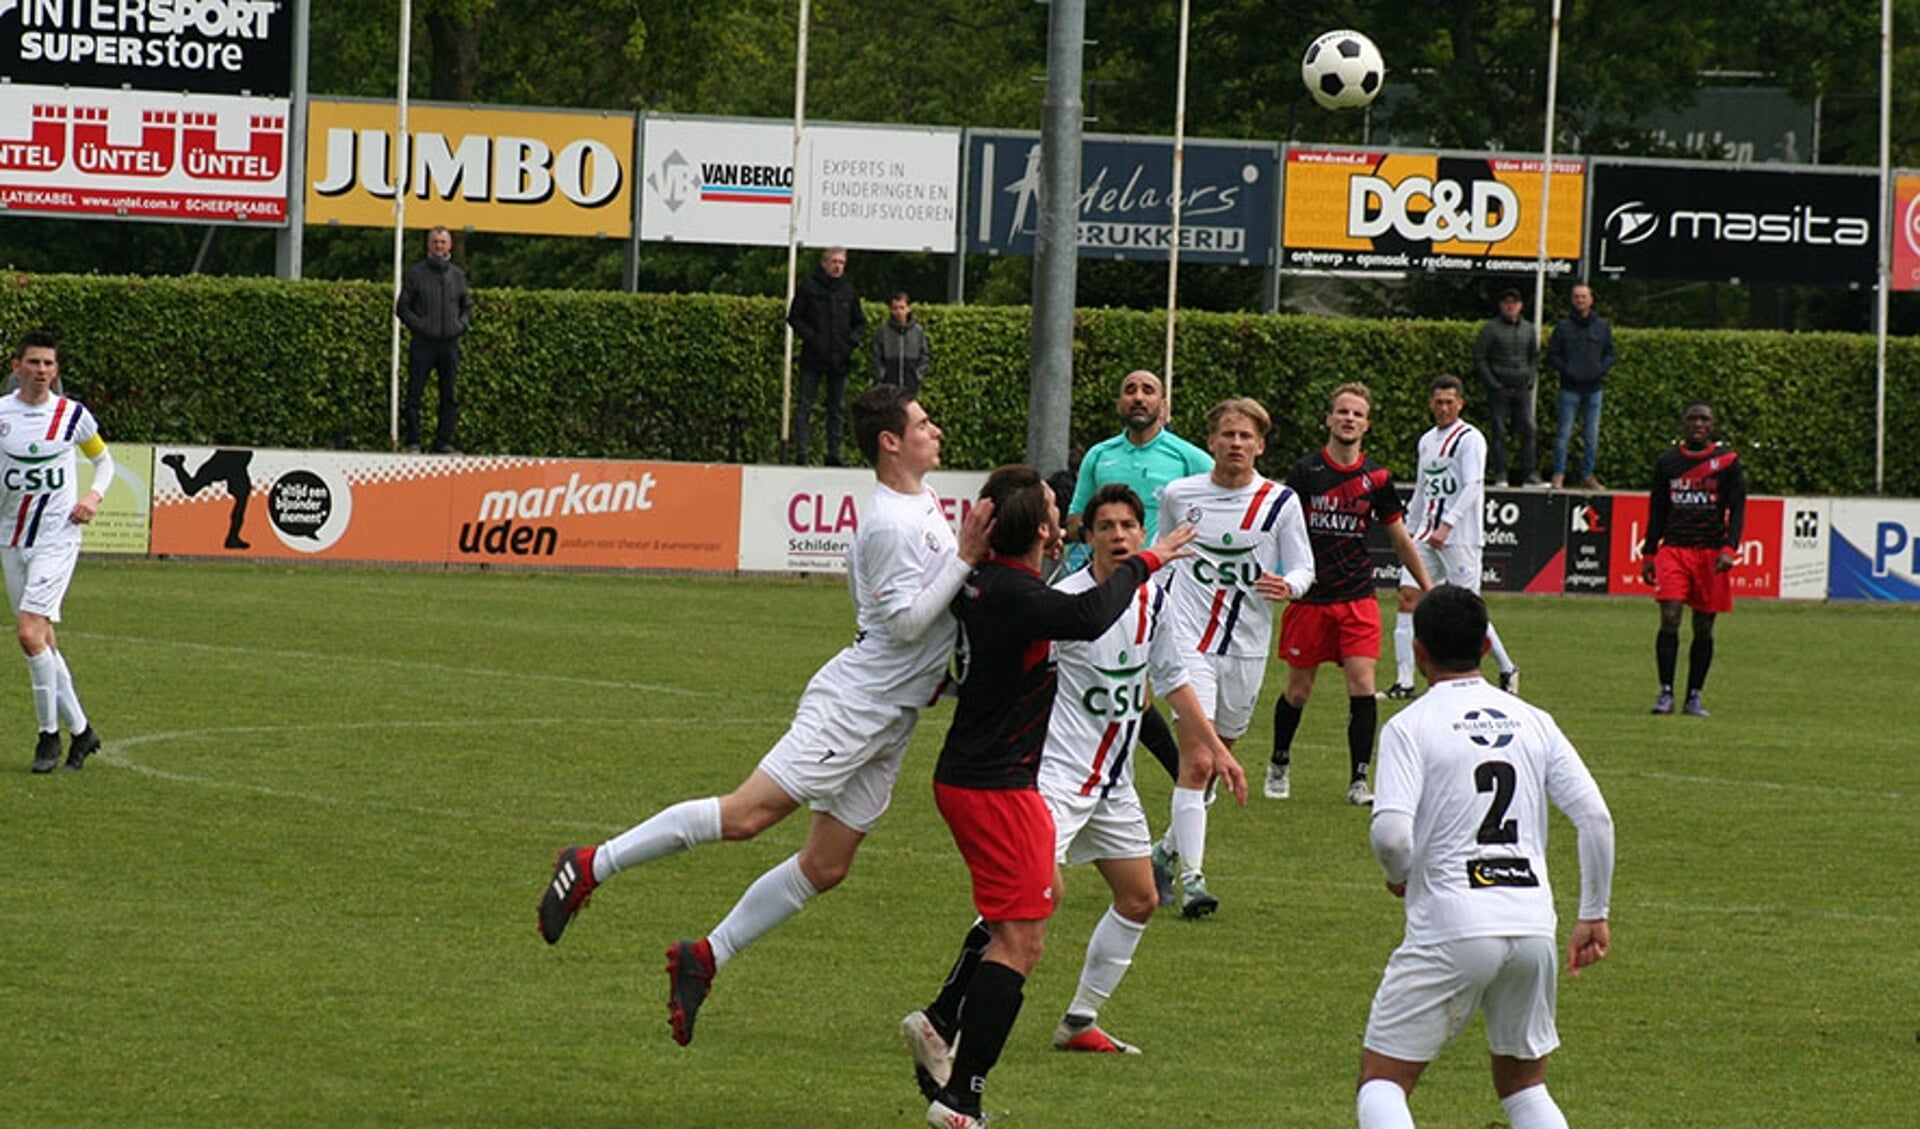 UDI'19 versloeg De Meern met 2-0. (foto: UDI'19)